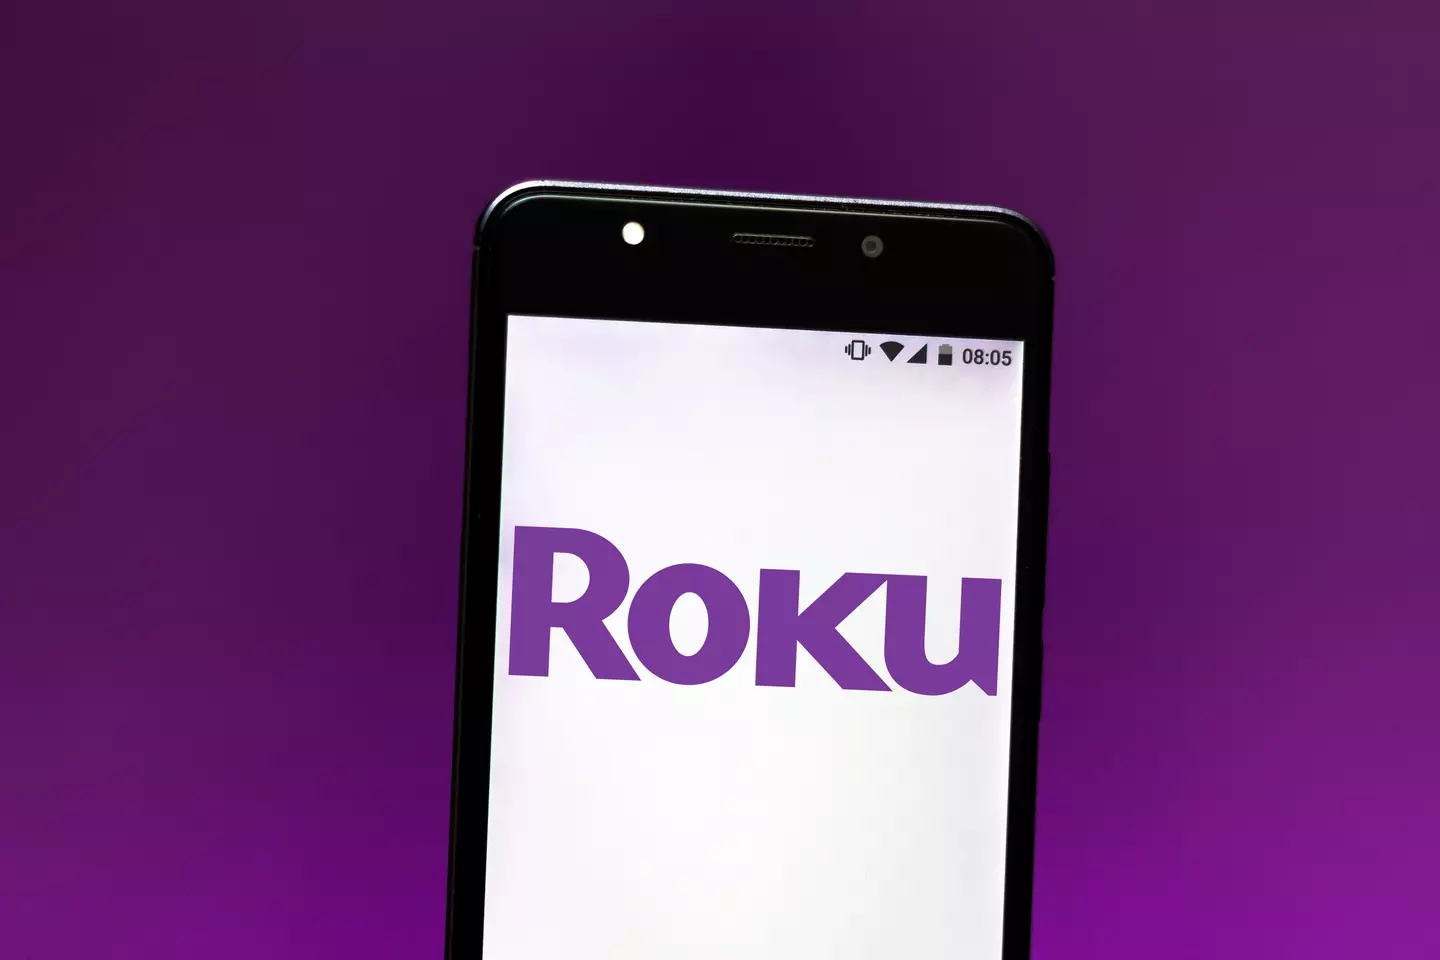 Roku confirmed the hack.